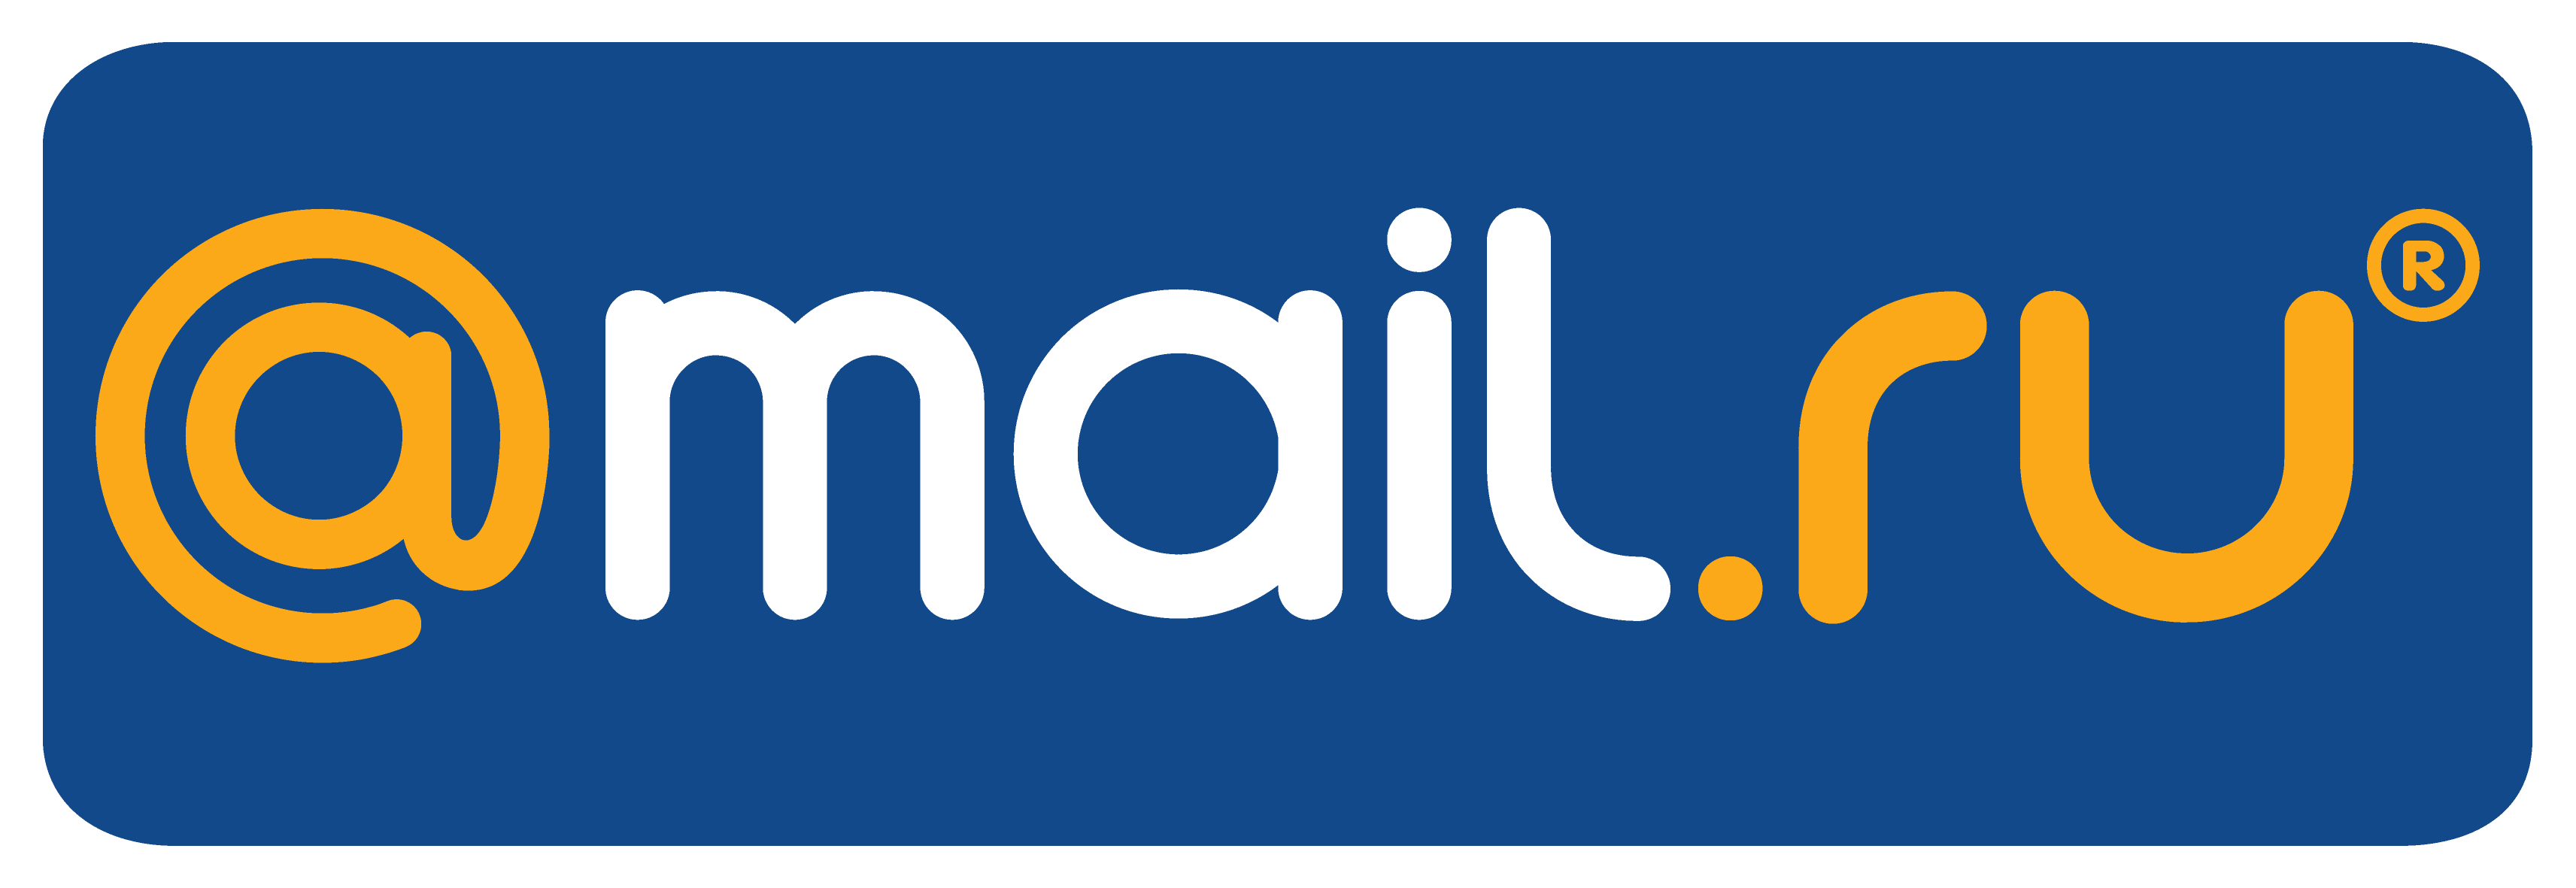 Mail. Mail.ru лого. Почта майл. Логотип мейл ру. Getmanova 1960 mail ru